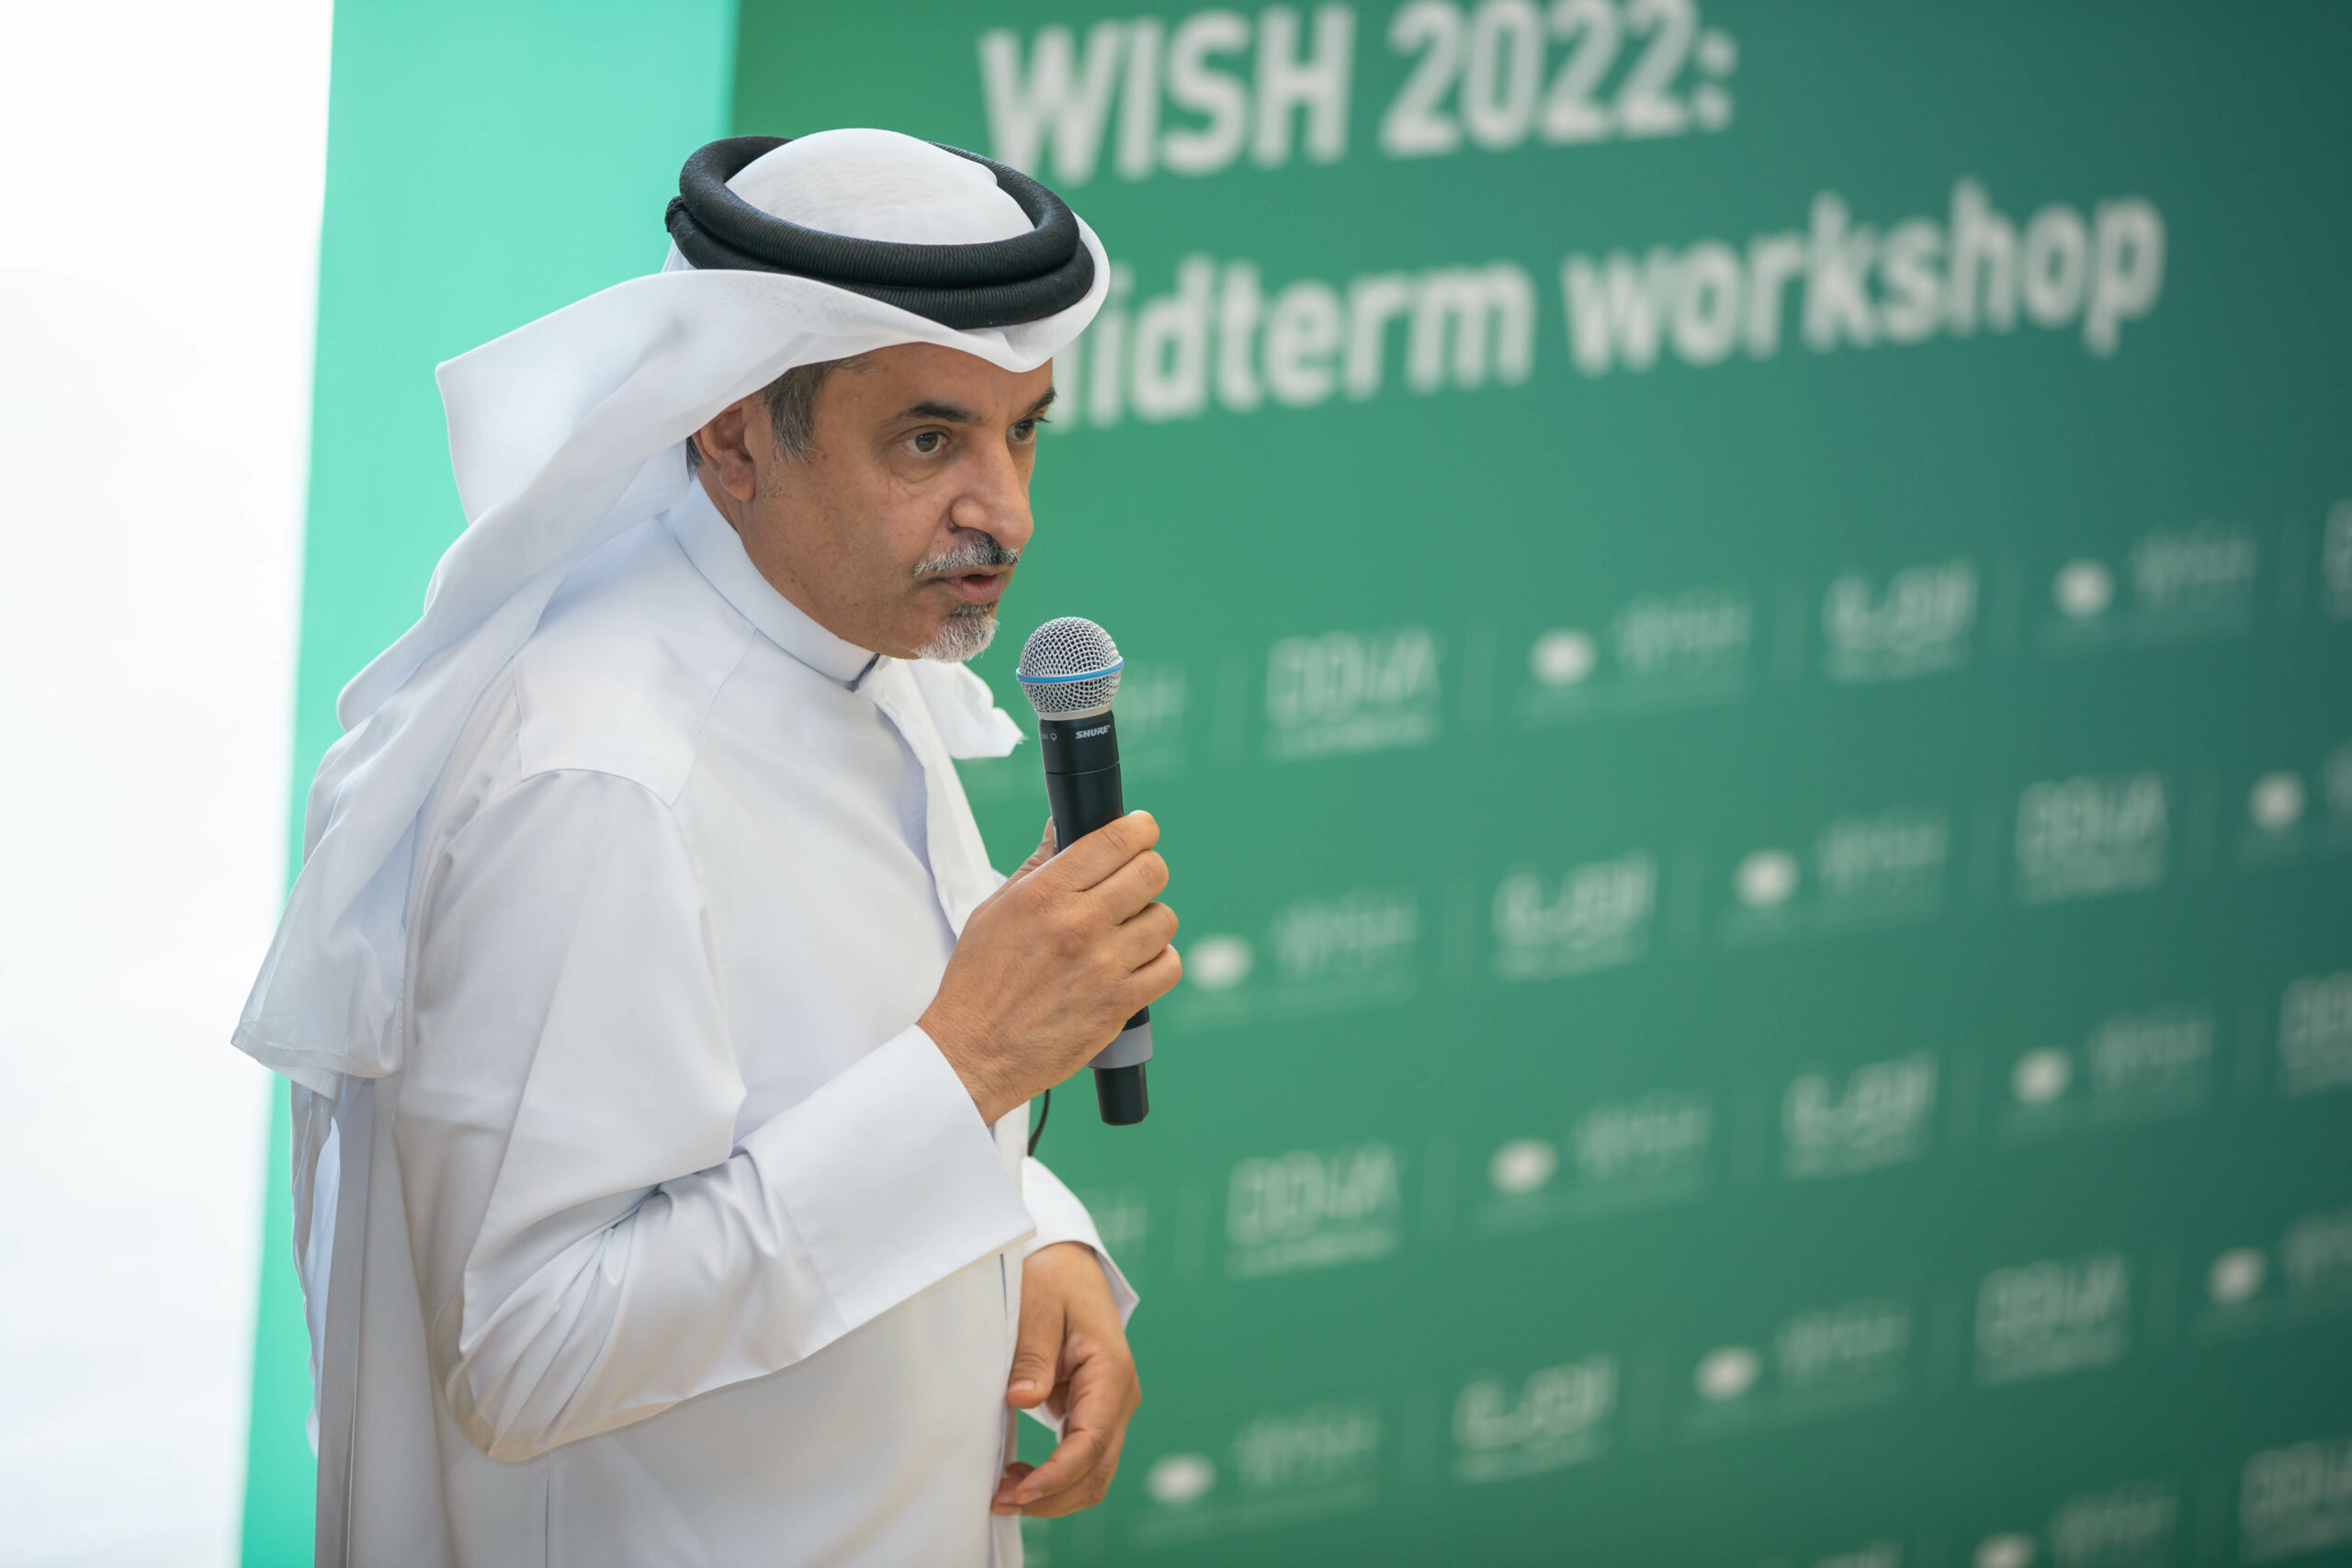 كأس العالم FIFA ٢٠٢٢™ والإرث الصحي على جدول أعمال قمة ويش 2022 من مؤسسة قطر القادمة